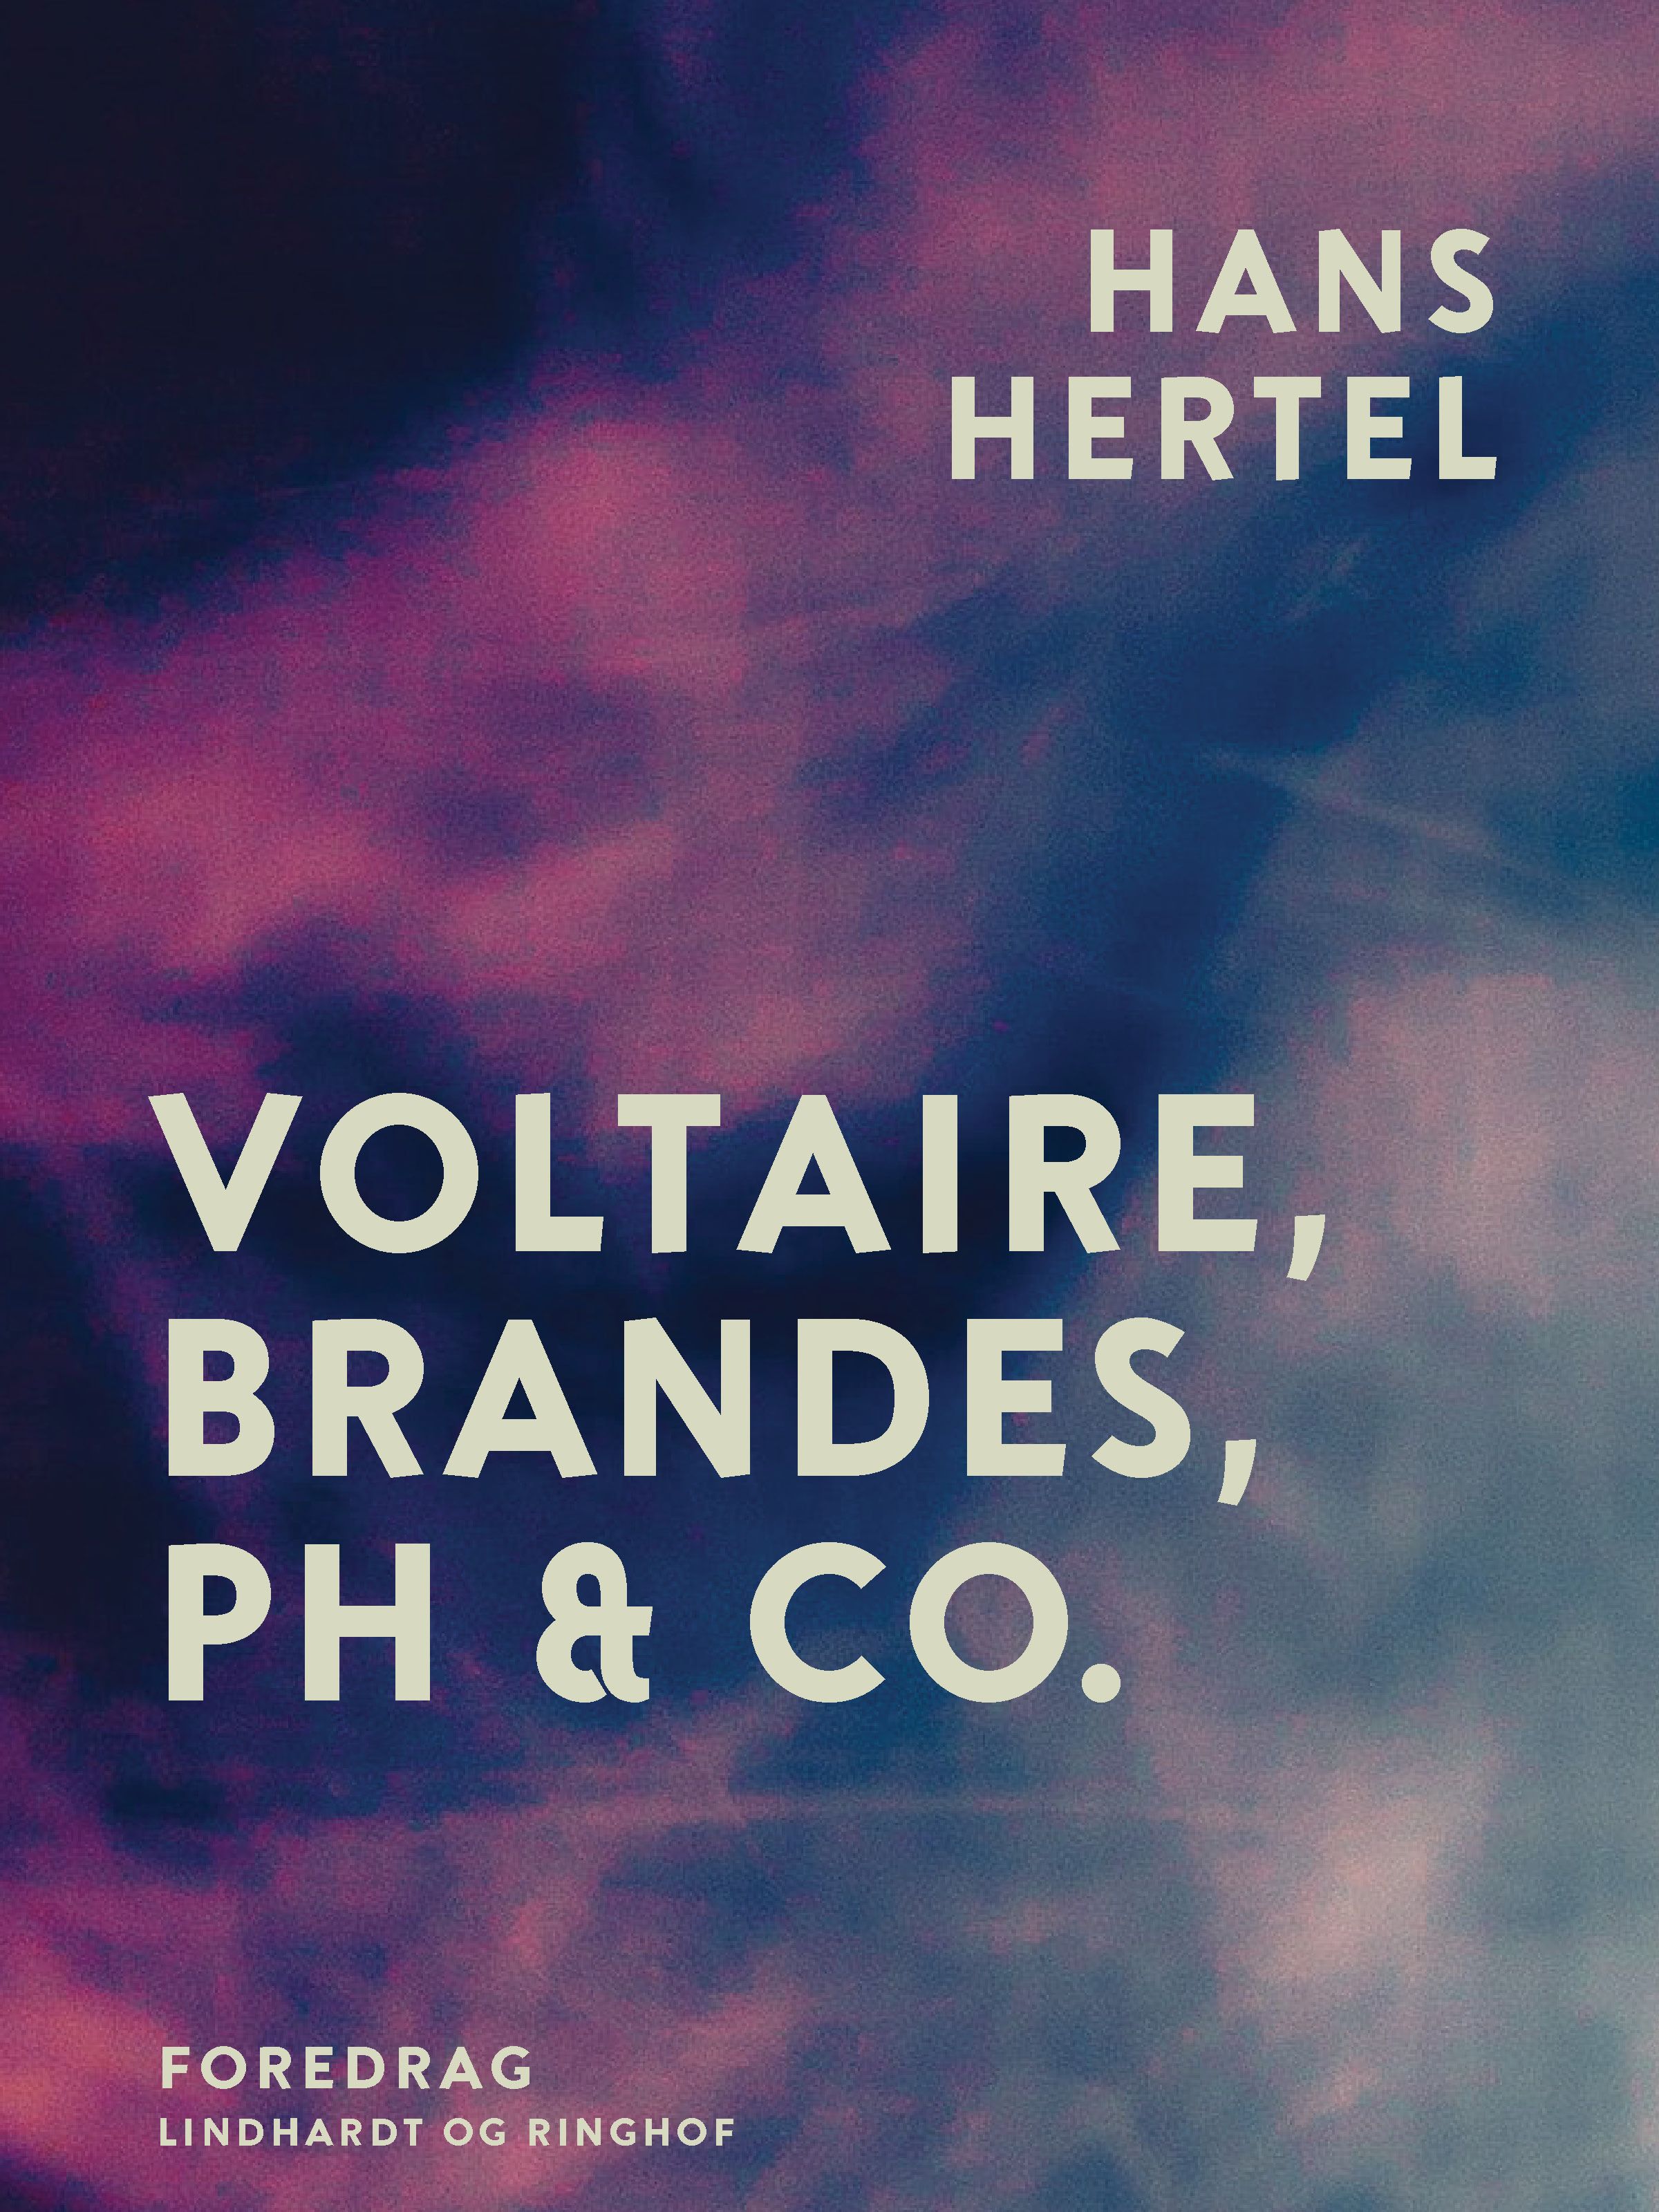 Voltaire, Brandes, PH & Co., e-bog af Hans Hertel